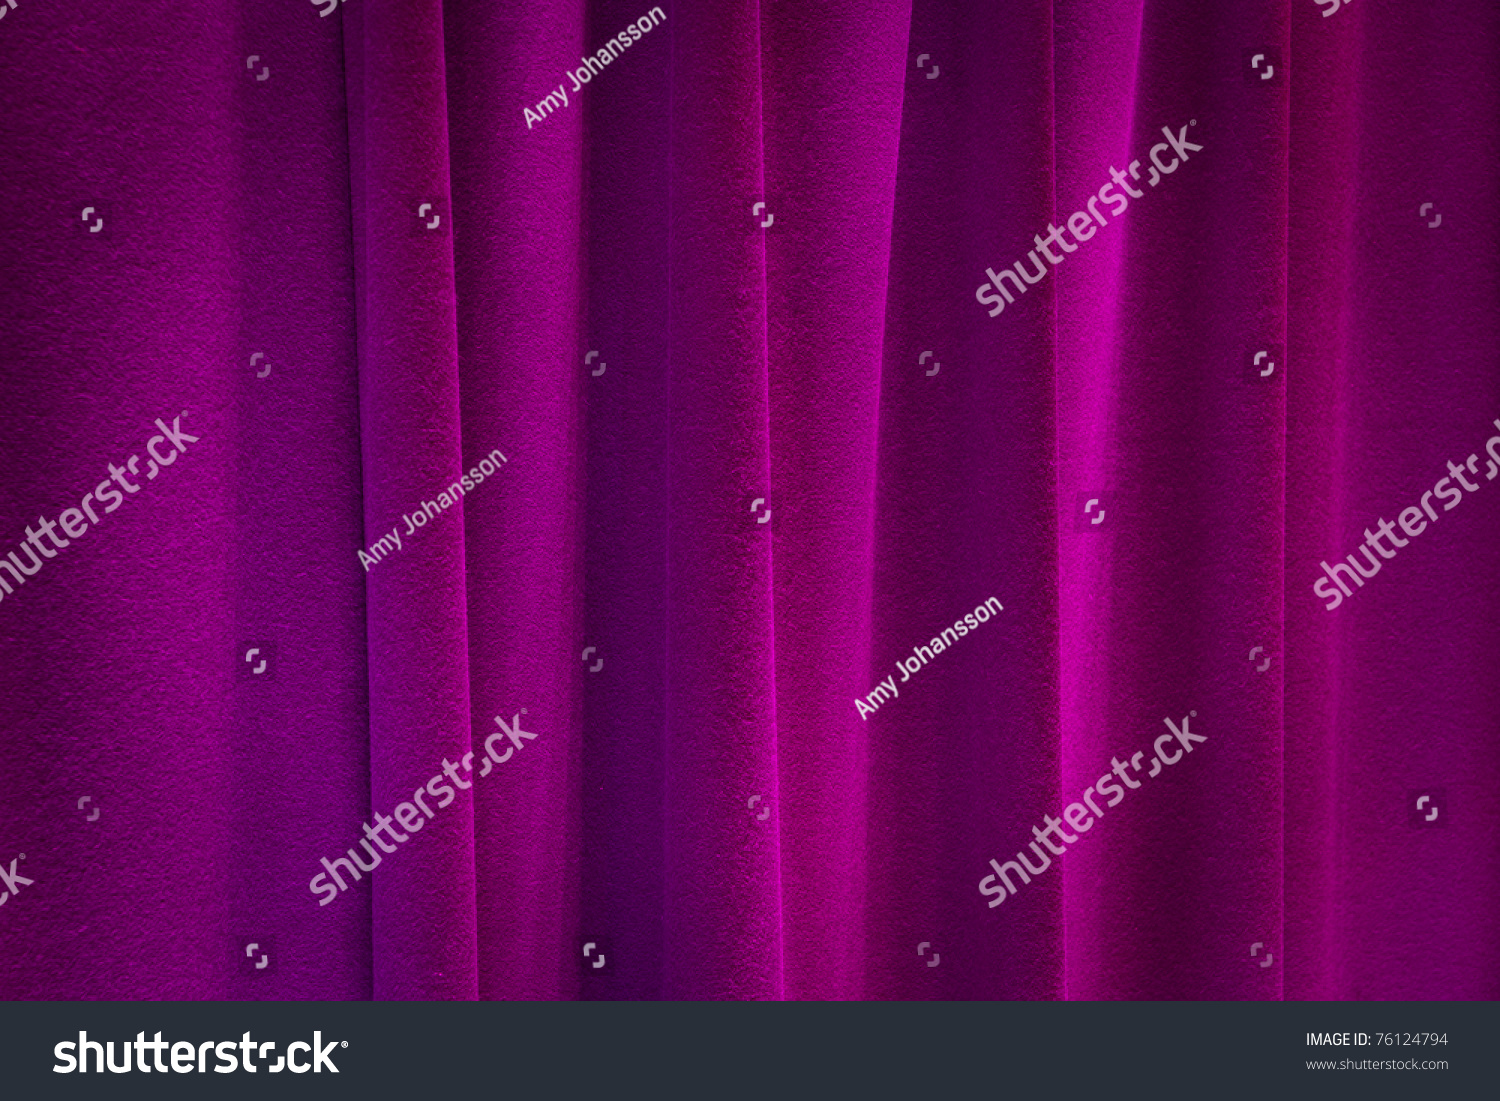 Background Purple Illuminated Curtain Stock Photo 76124794